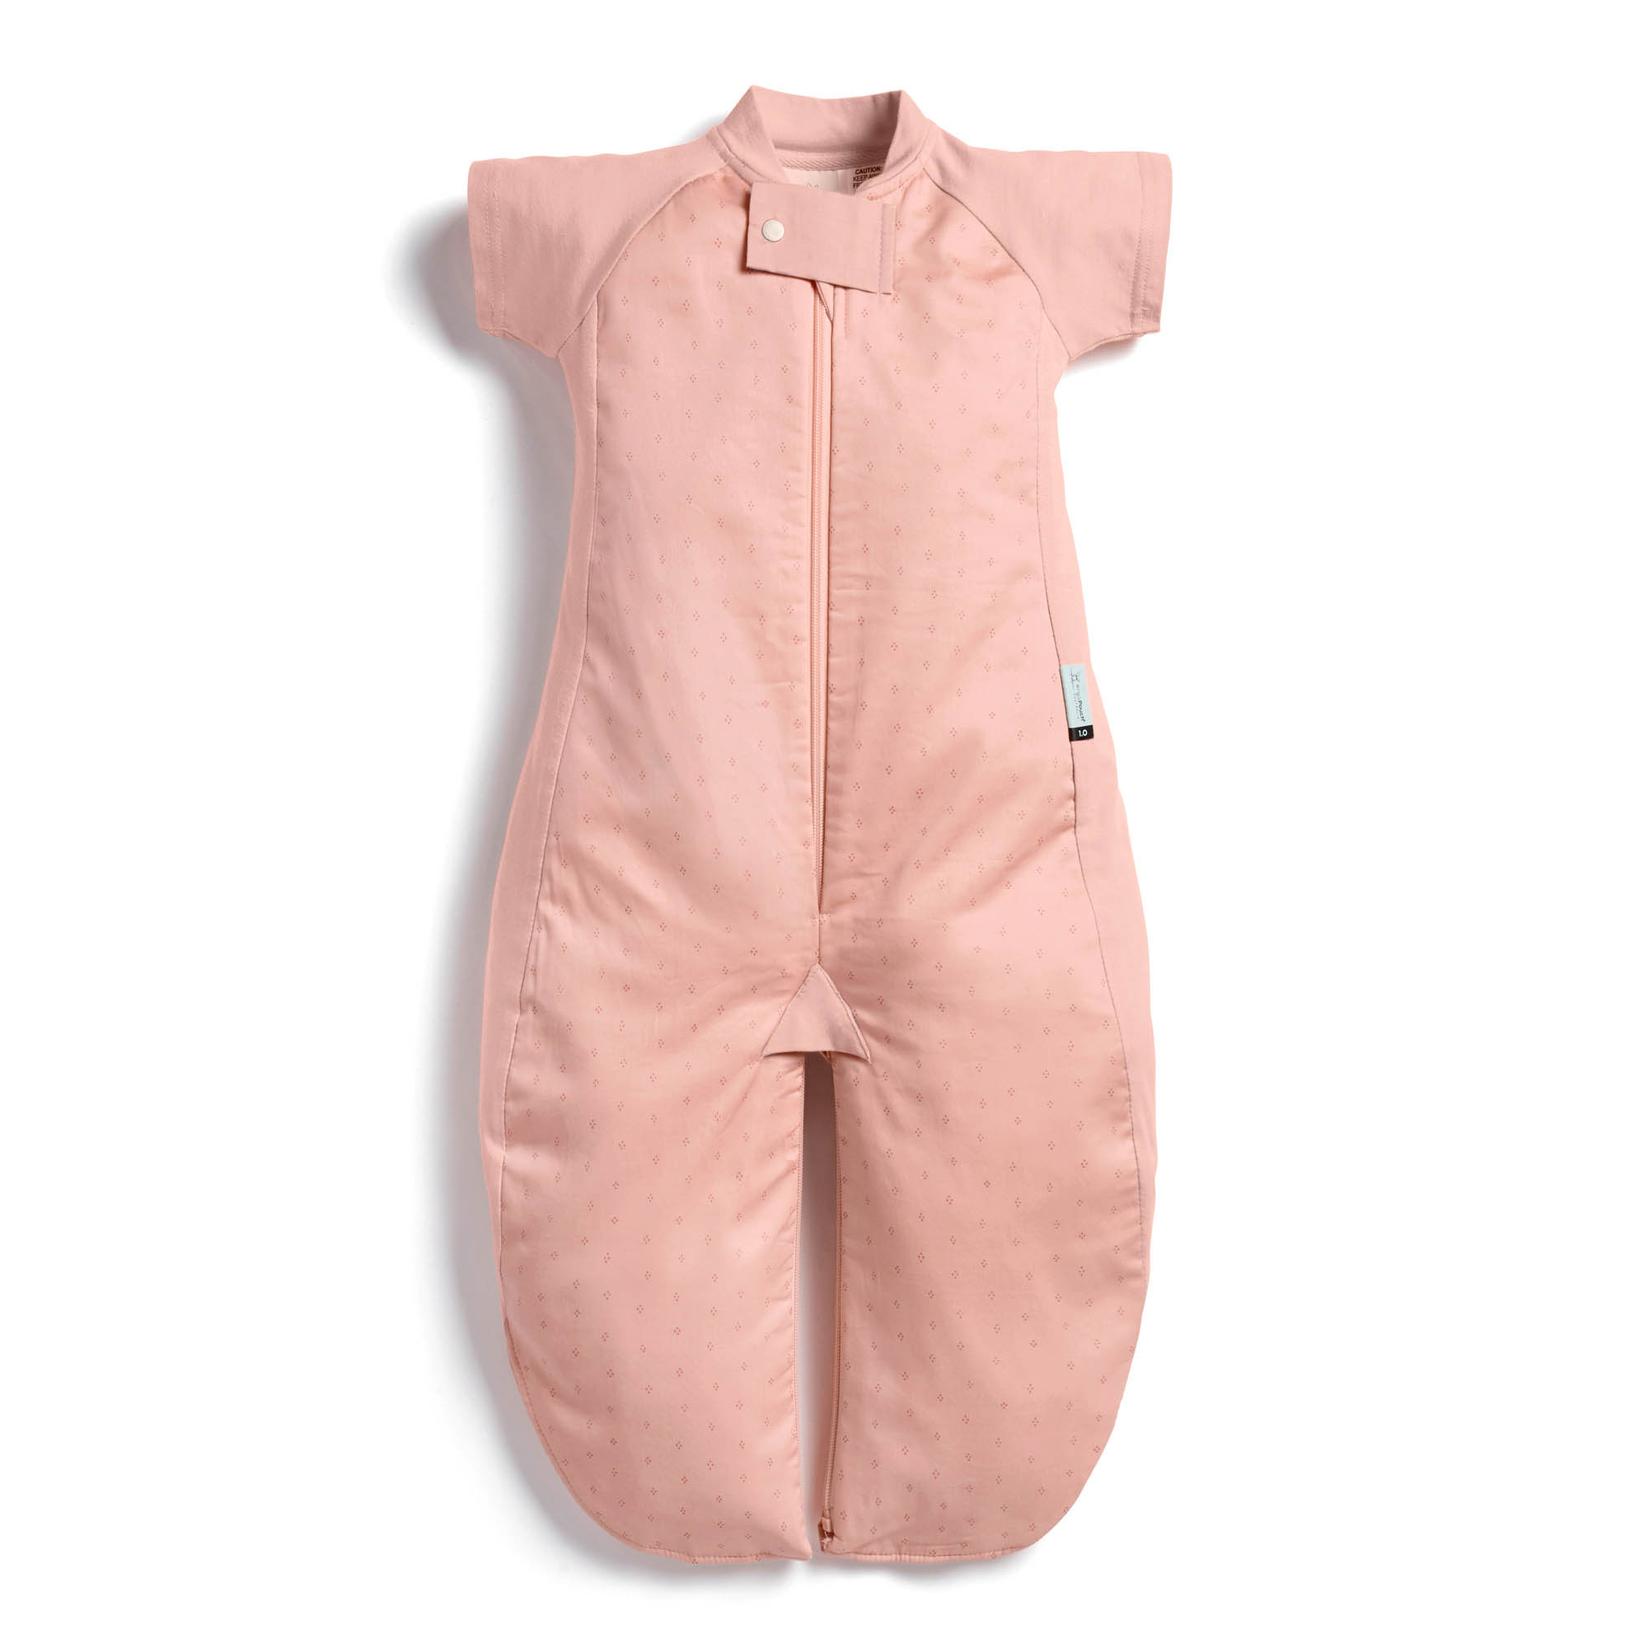 ERGO POUCH  Vreća za spavanje sa mogućnošću odvajanja nogavica 8-24 mSleep Suit Bag TOG 1.0 roze